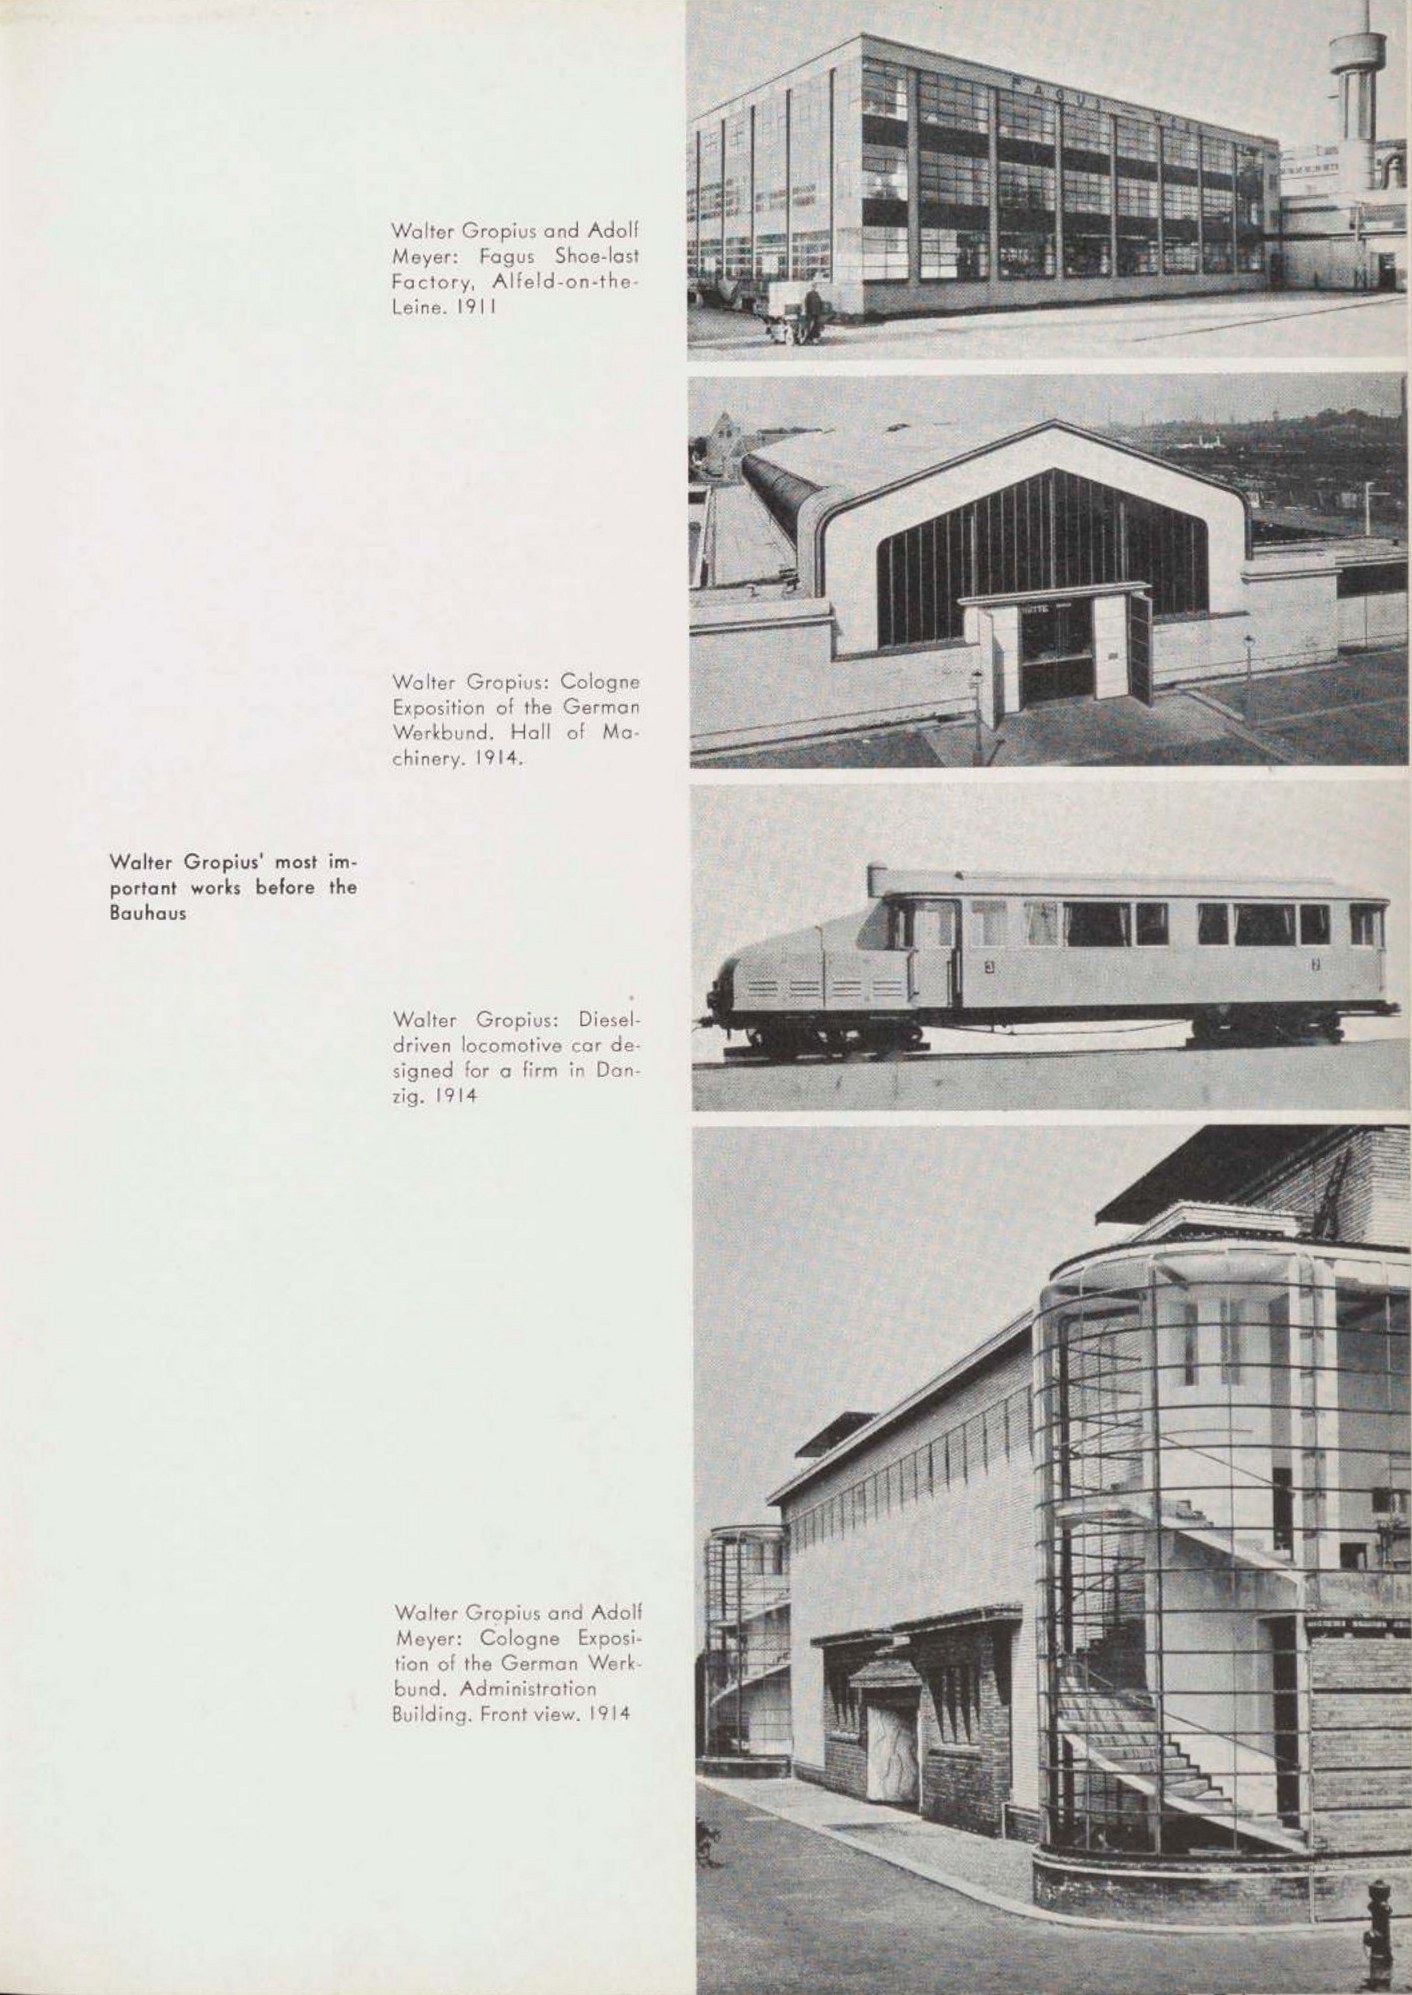 Bauhaus, 1919-1928 / Edited by Herbert Bayer, Walter Gropius, Ise Gropius (Chairman of the Department of Architecture, Harvard University). — New York : The Museum of Modern Art, 1938